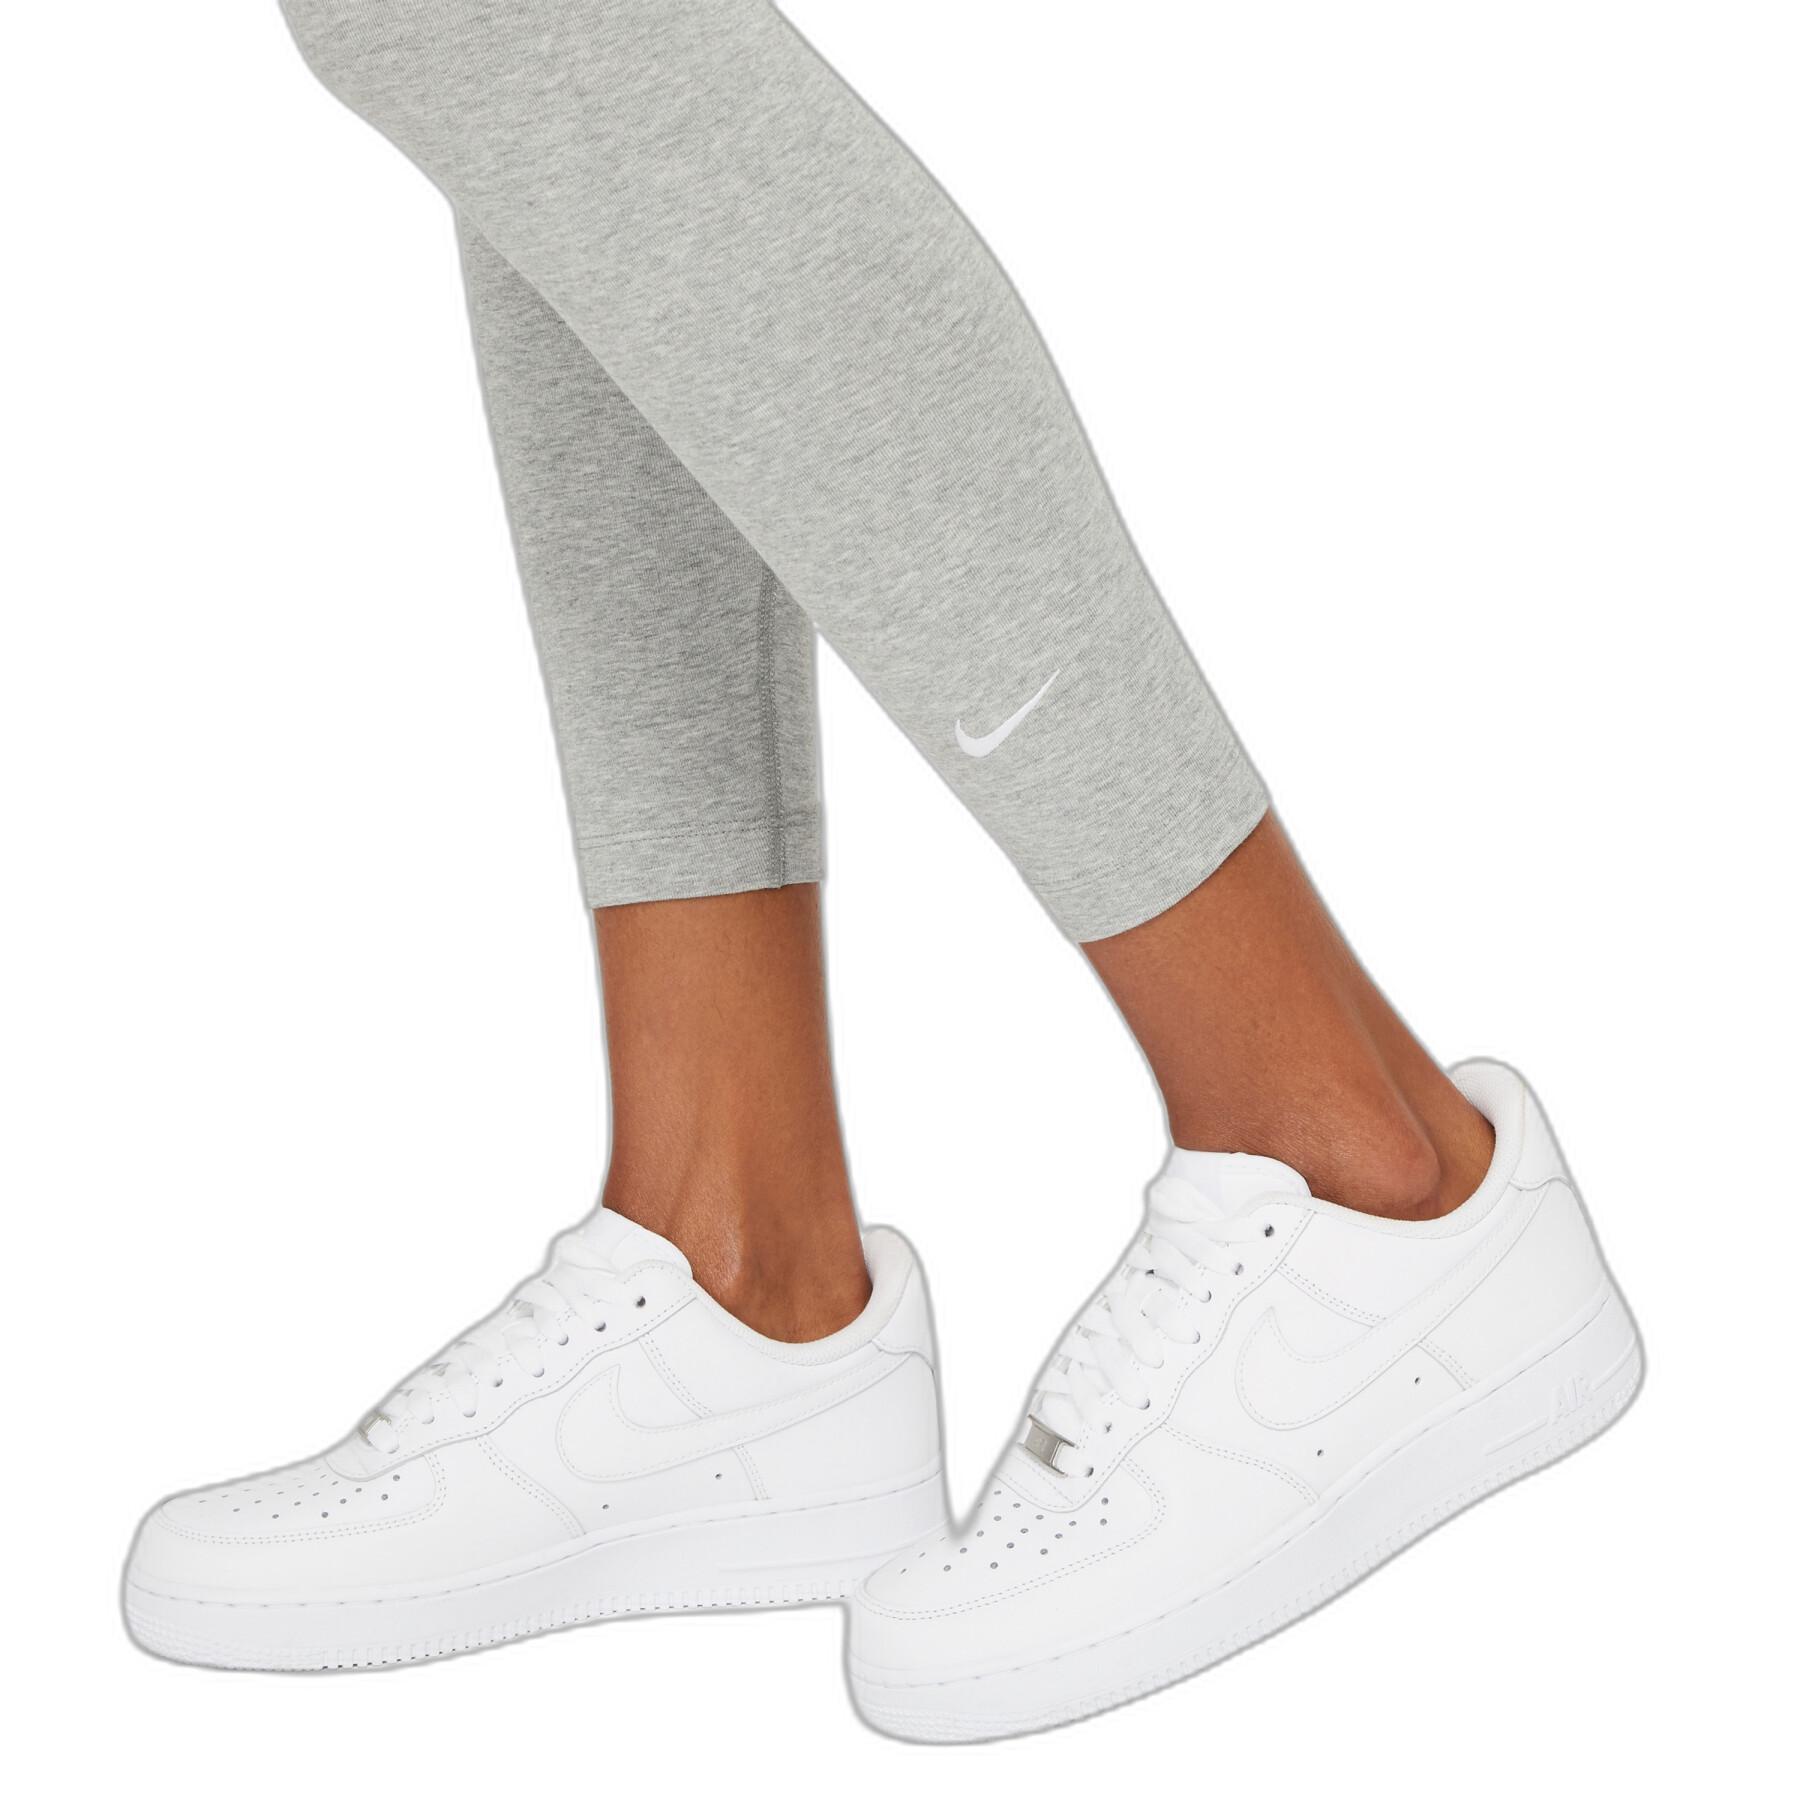 Legging woman Nike Sportswear Essential